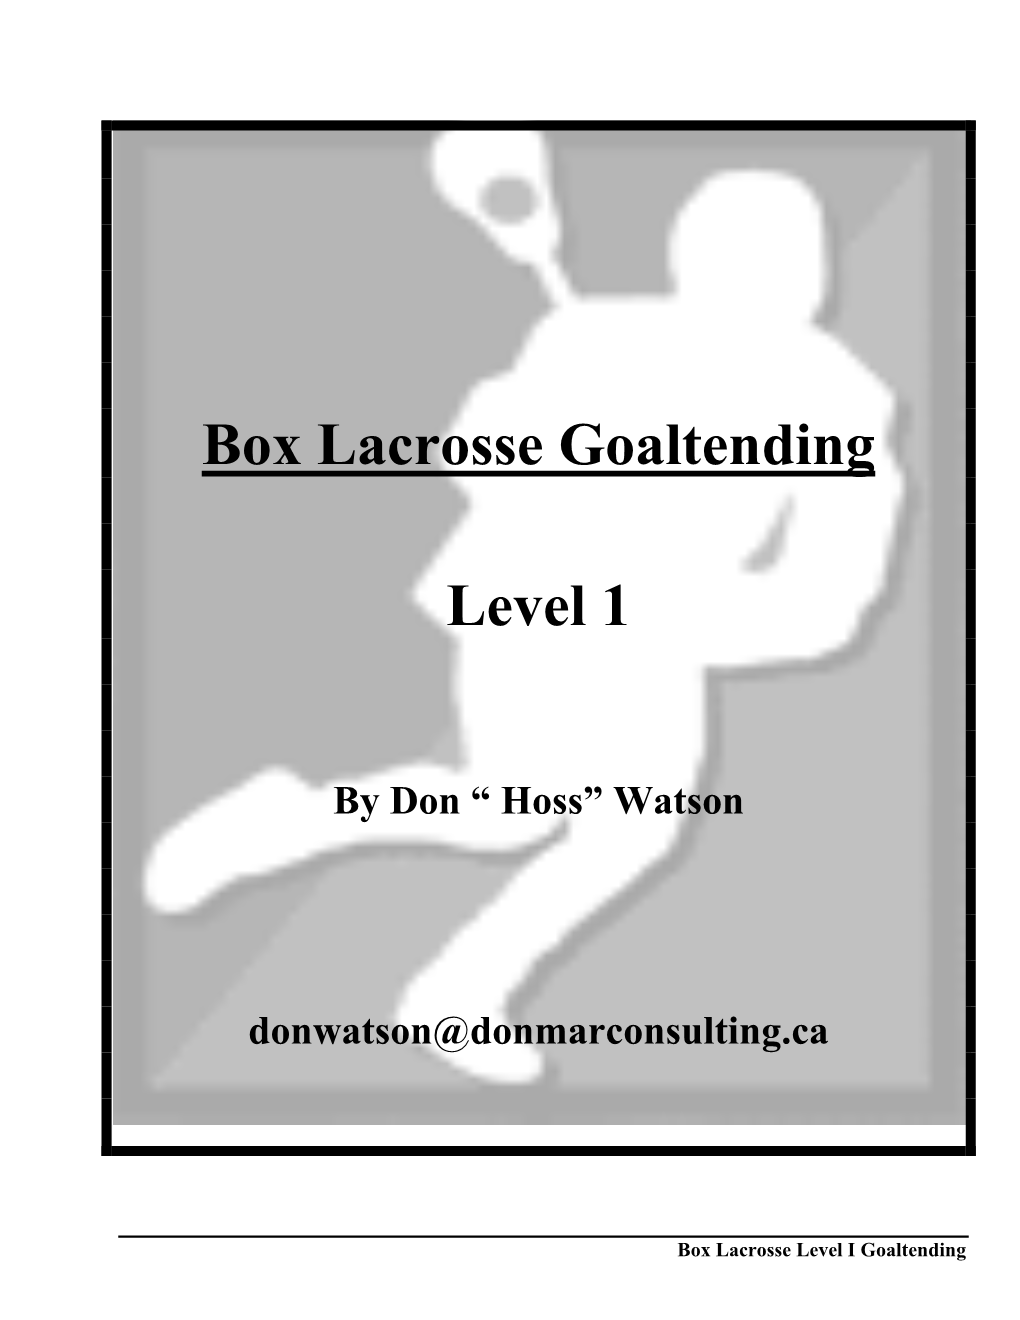 Box Lacrosse Goaltending Level 1